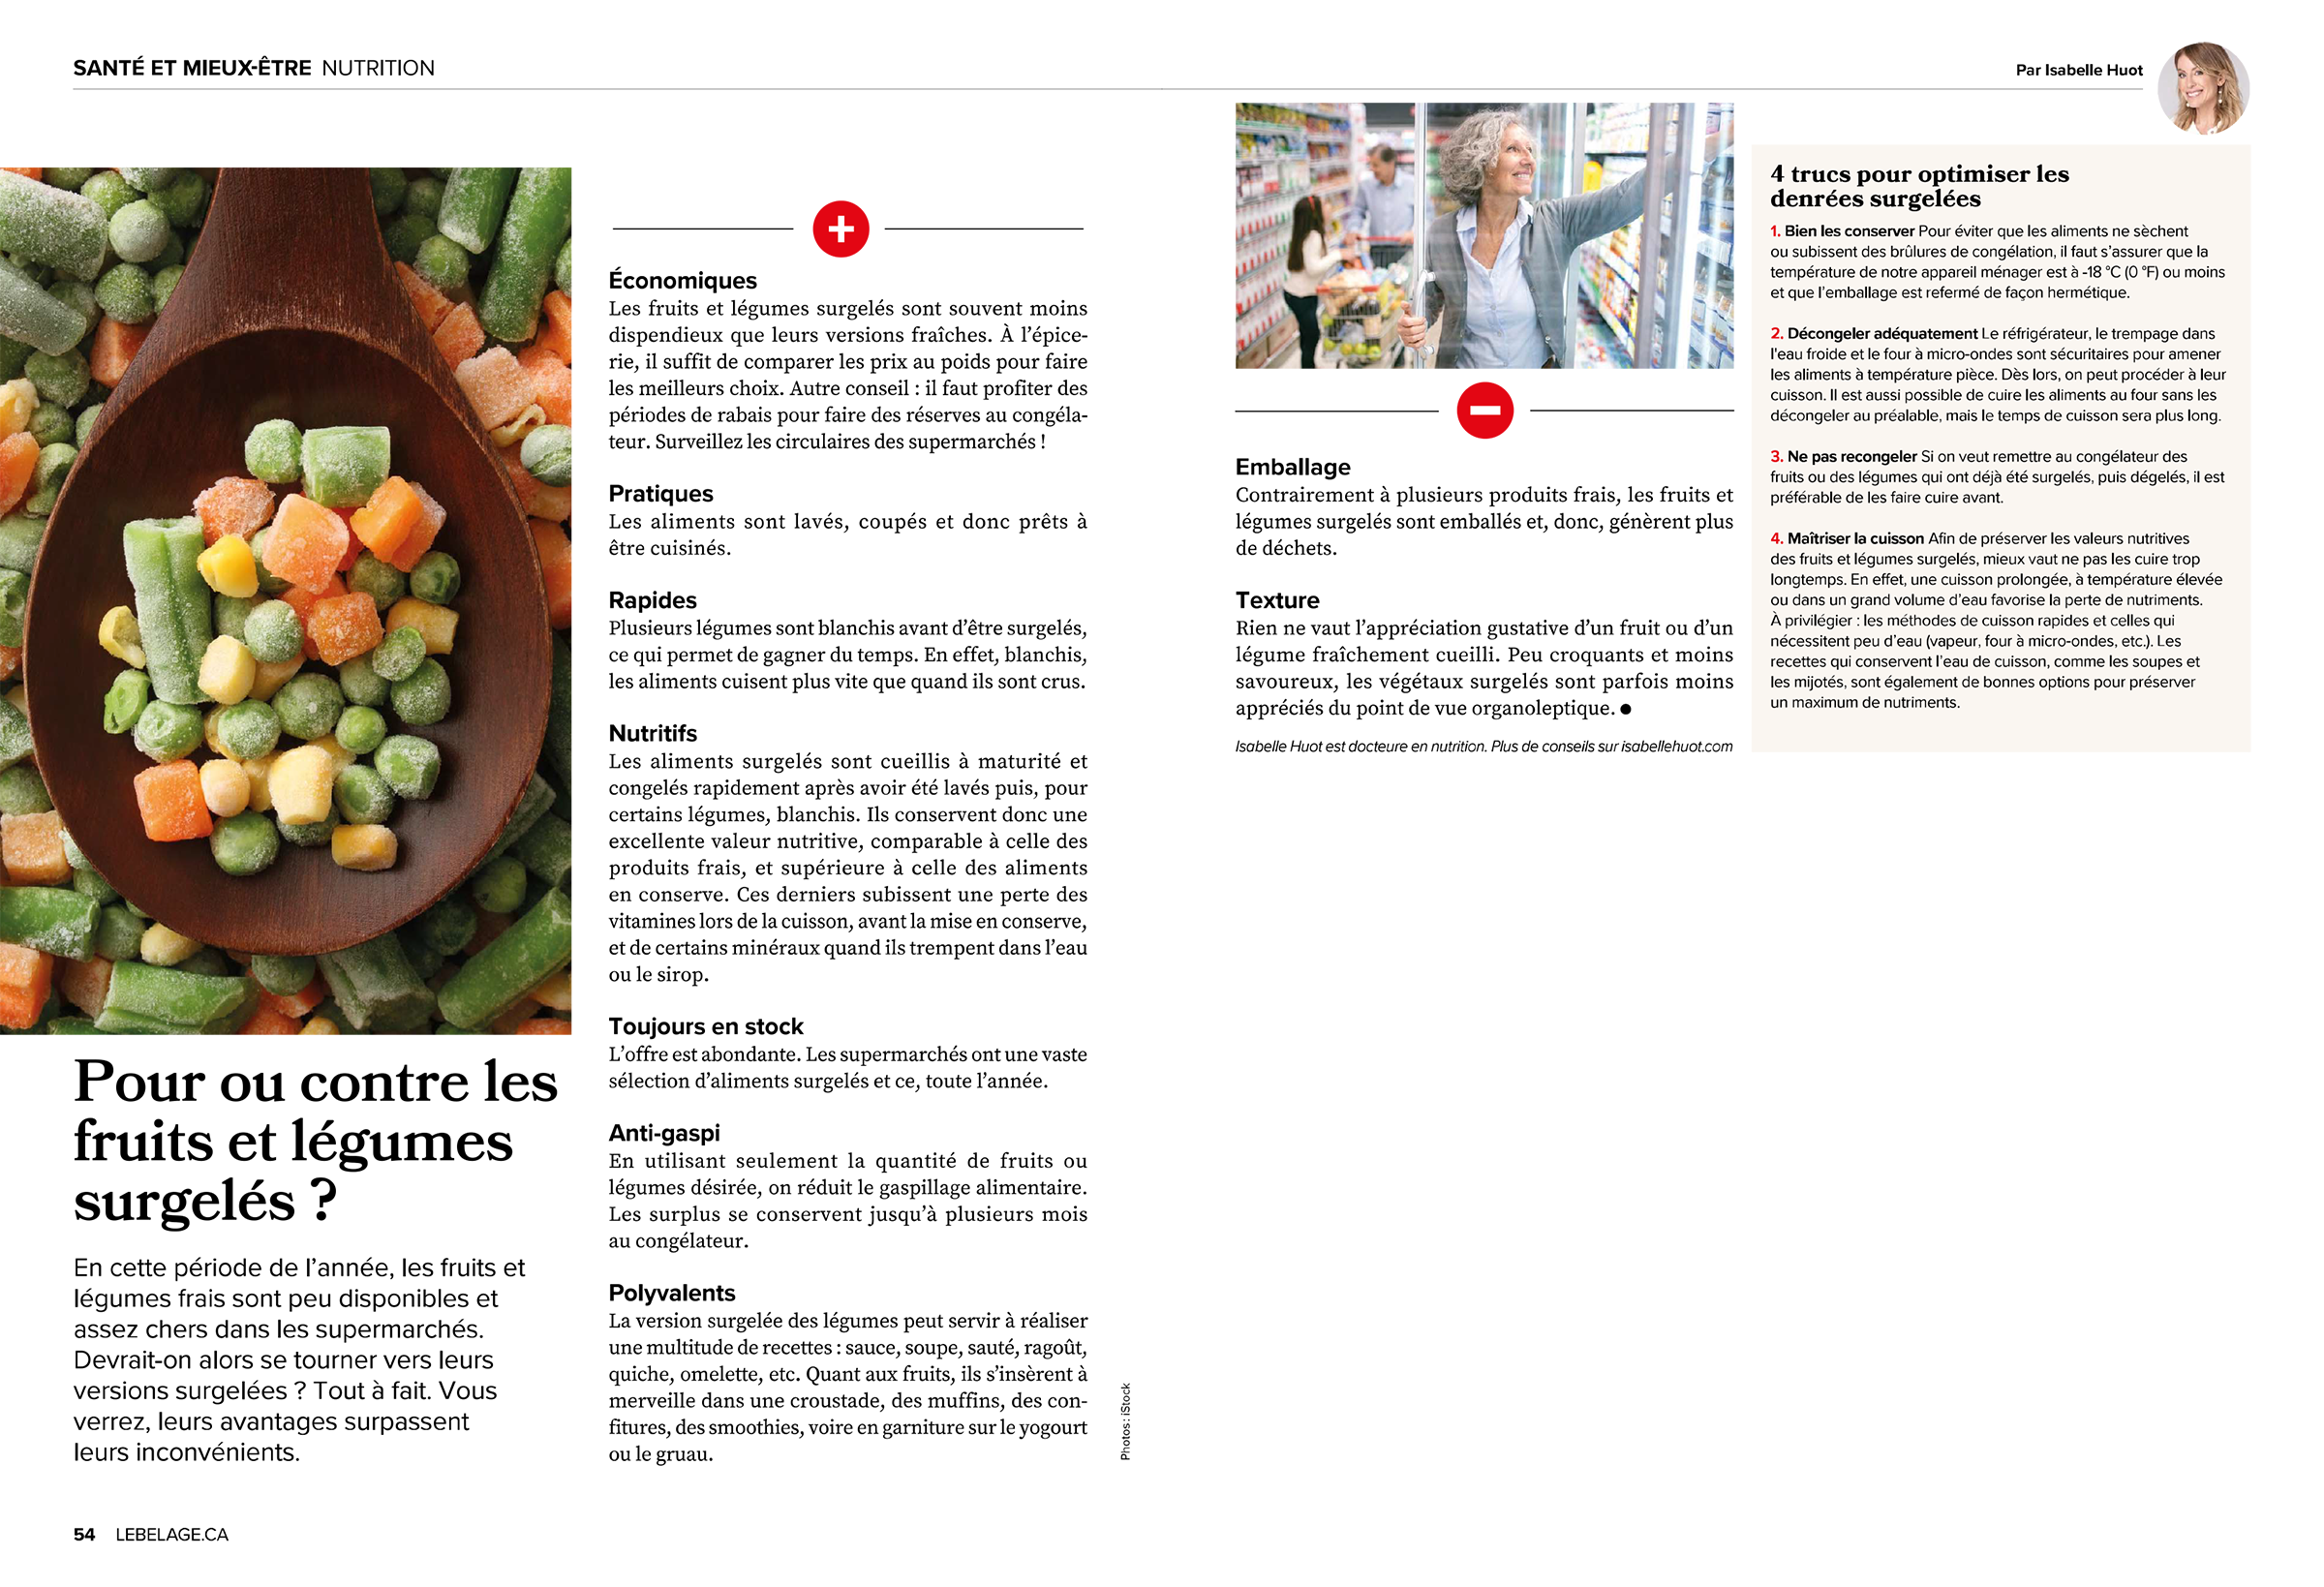 Isabelle Huot, Docteure en nutrition, fait le point sur les bienfaits des fruits et légumes surgelés. Ils sont économiques, pratiques, nutritifs, toujours disponibles et polyvalents. Un article rédigé pour le Bel Âge Magazine.